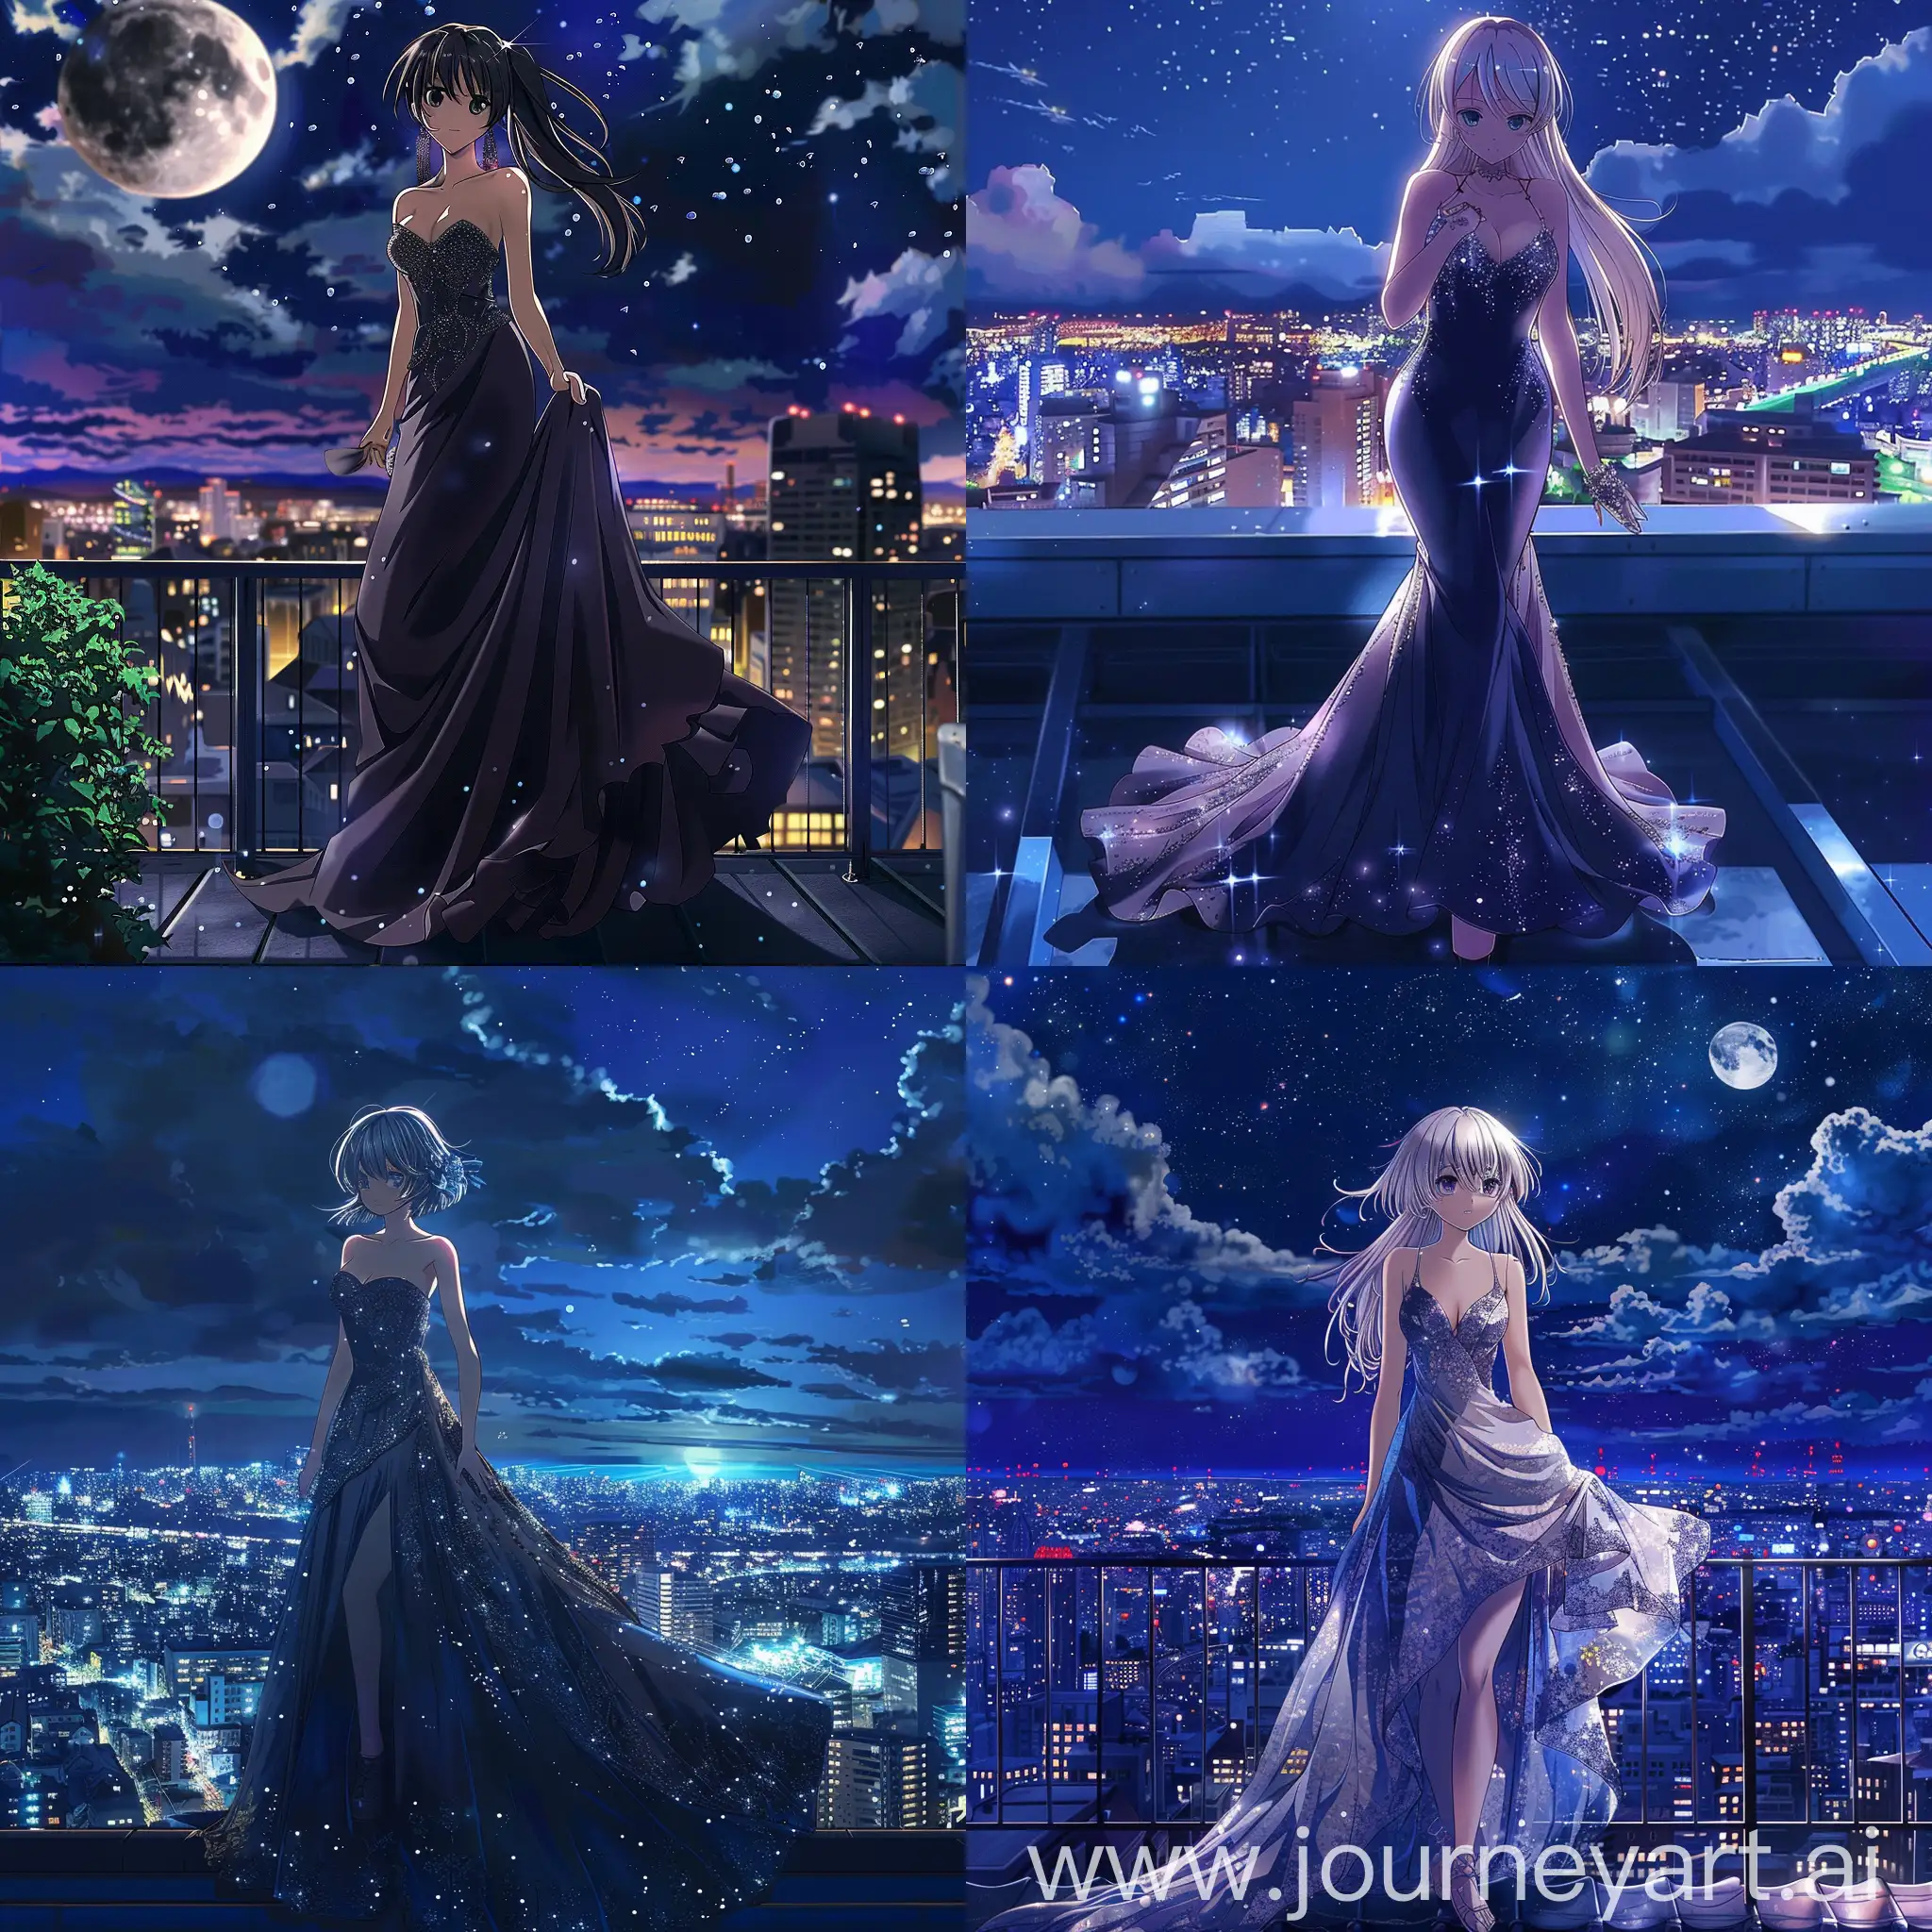 Создай аниме девушку возраста примерно 17 лет одетую в в вечернее платье стоящих на крыше перед ночным городом